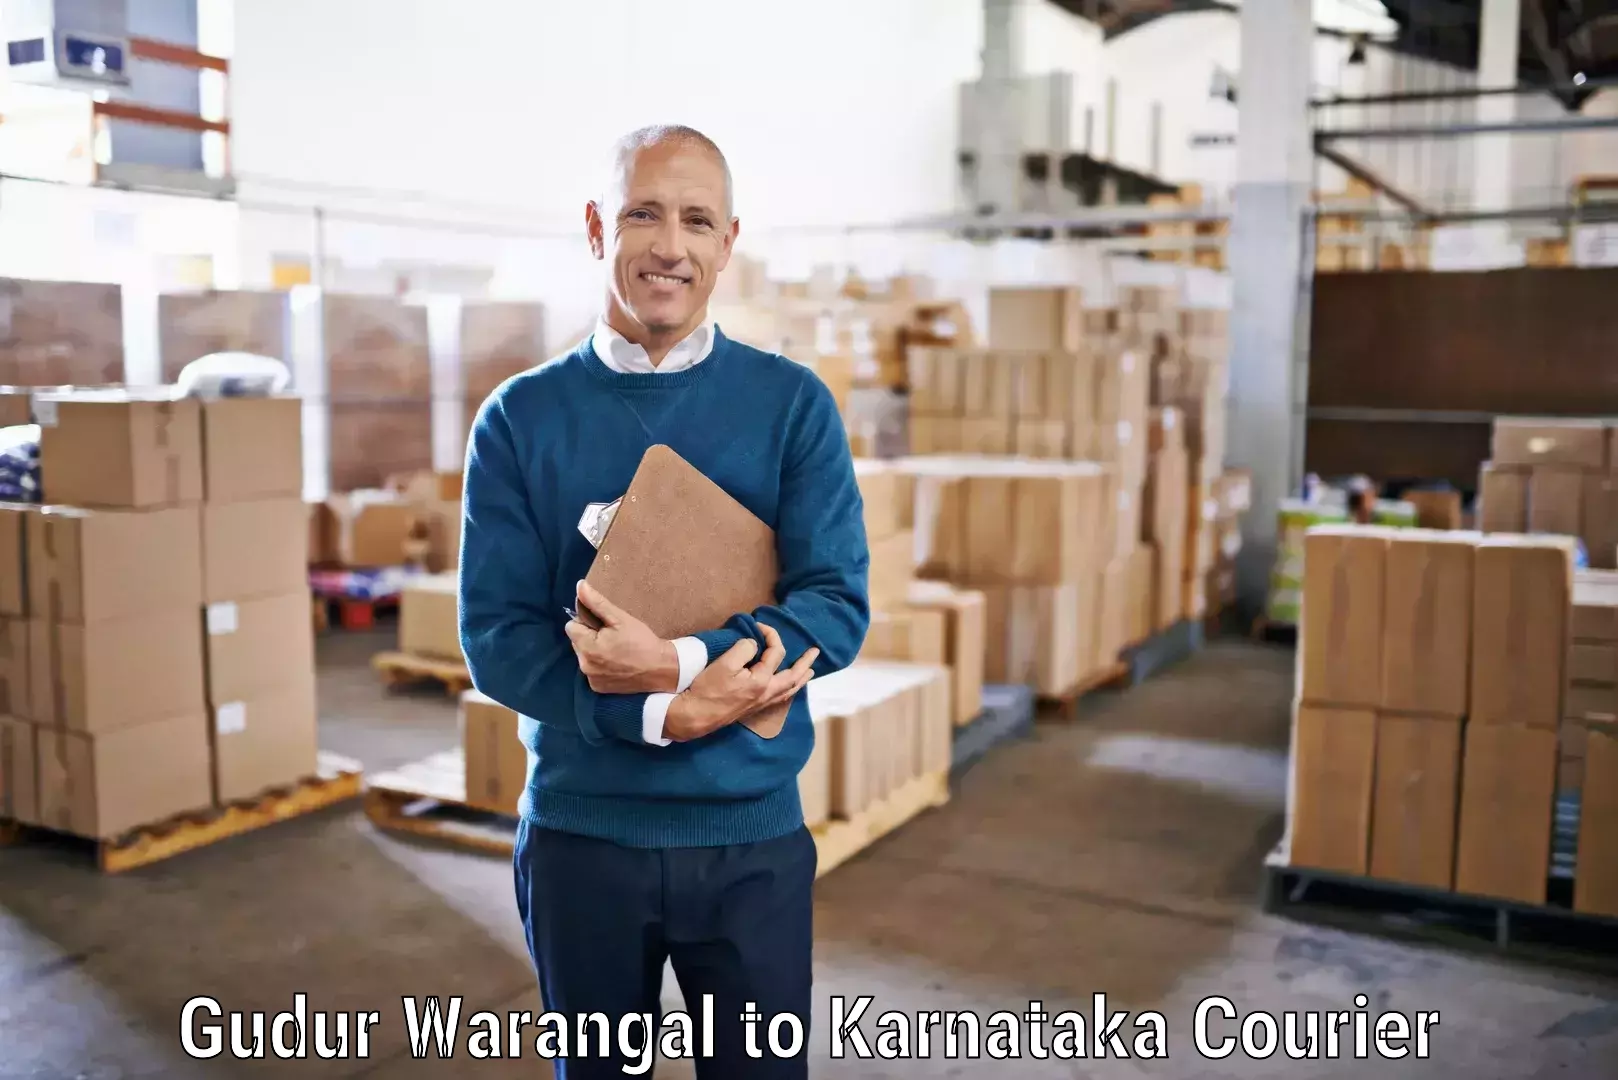 Multi-package shipping Gudur Warangal to Bangalore